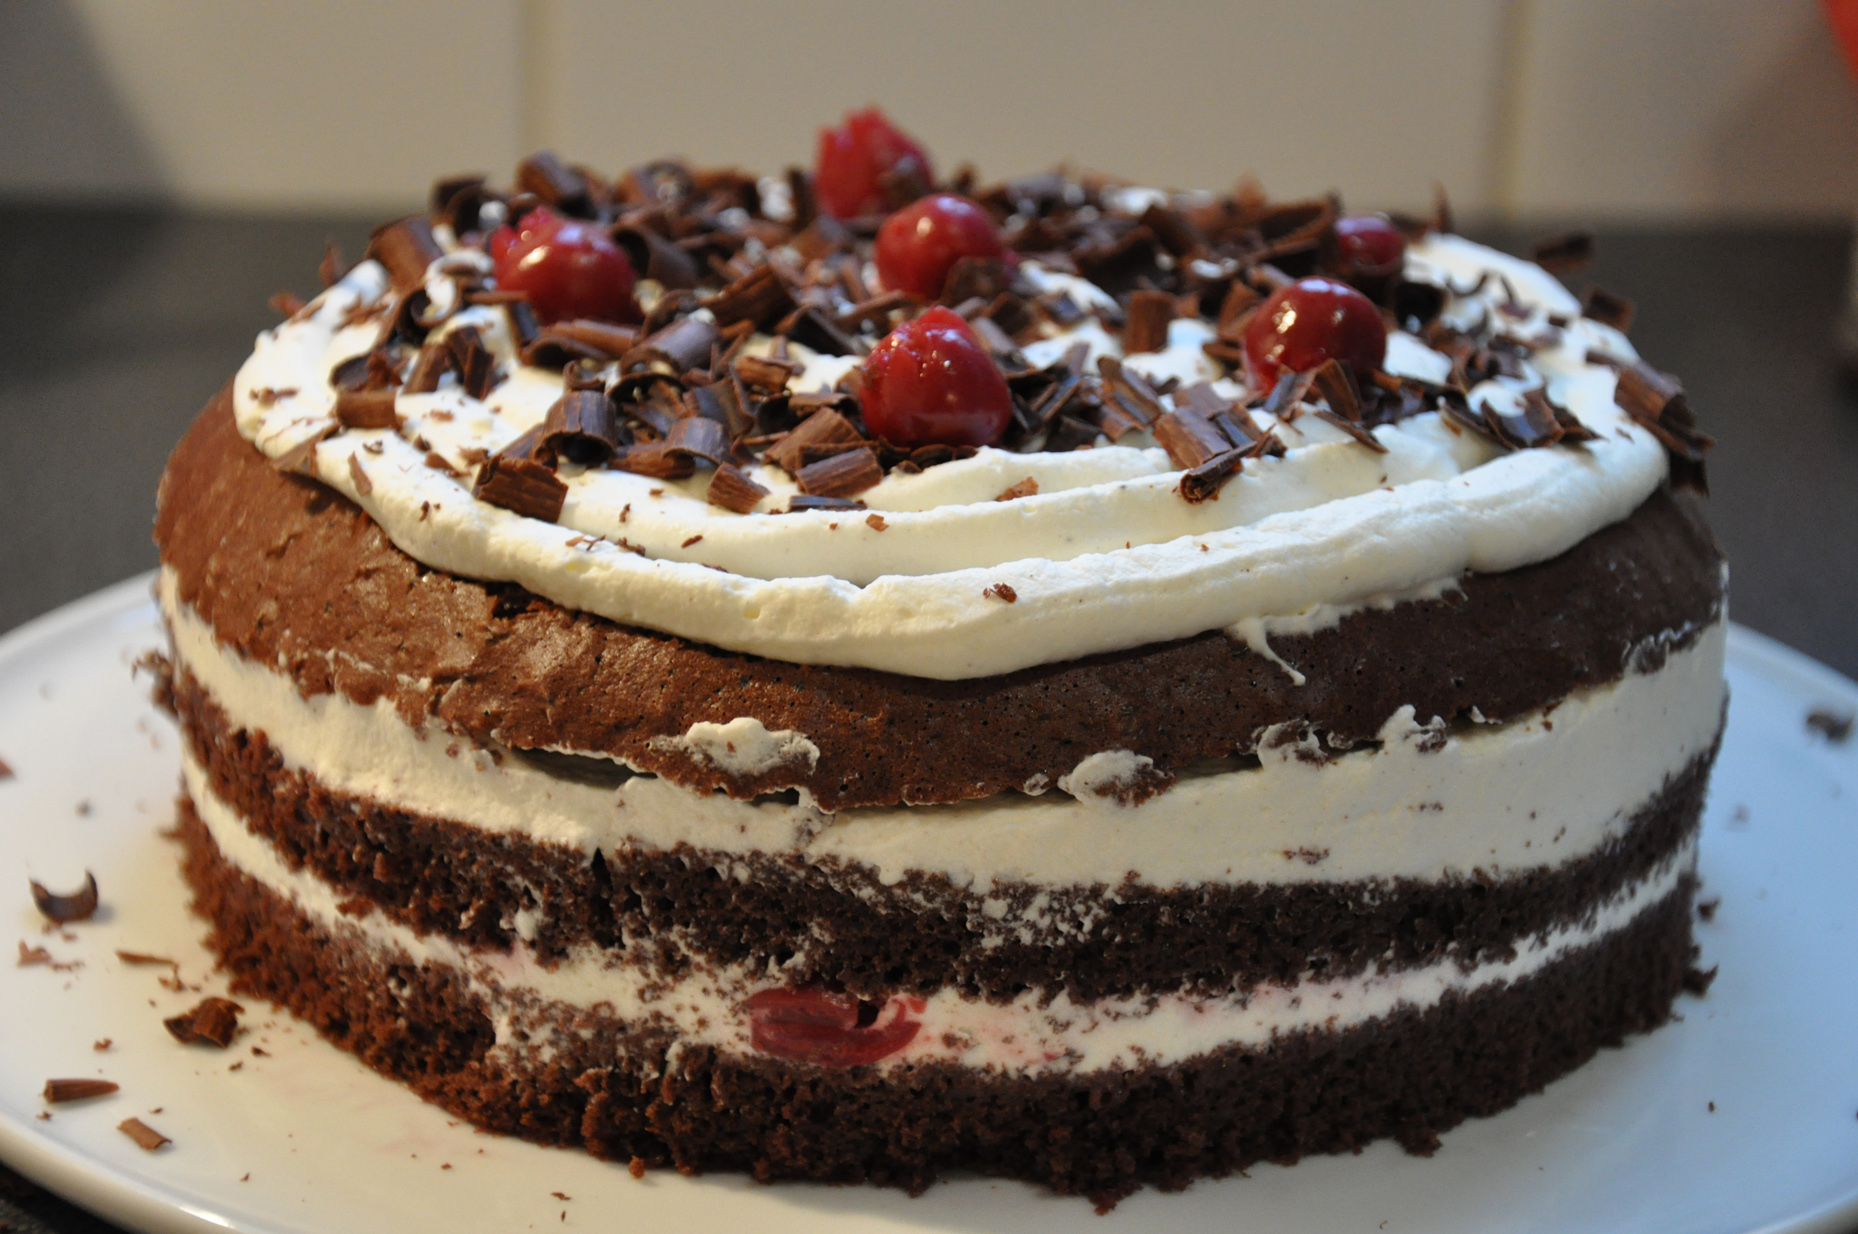 Gâteau au chocolat - Fiche recette avec photos - Meilleur du Chef